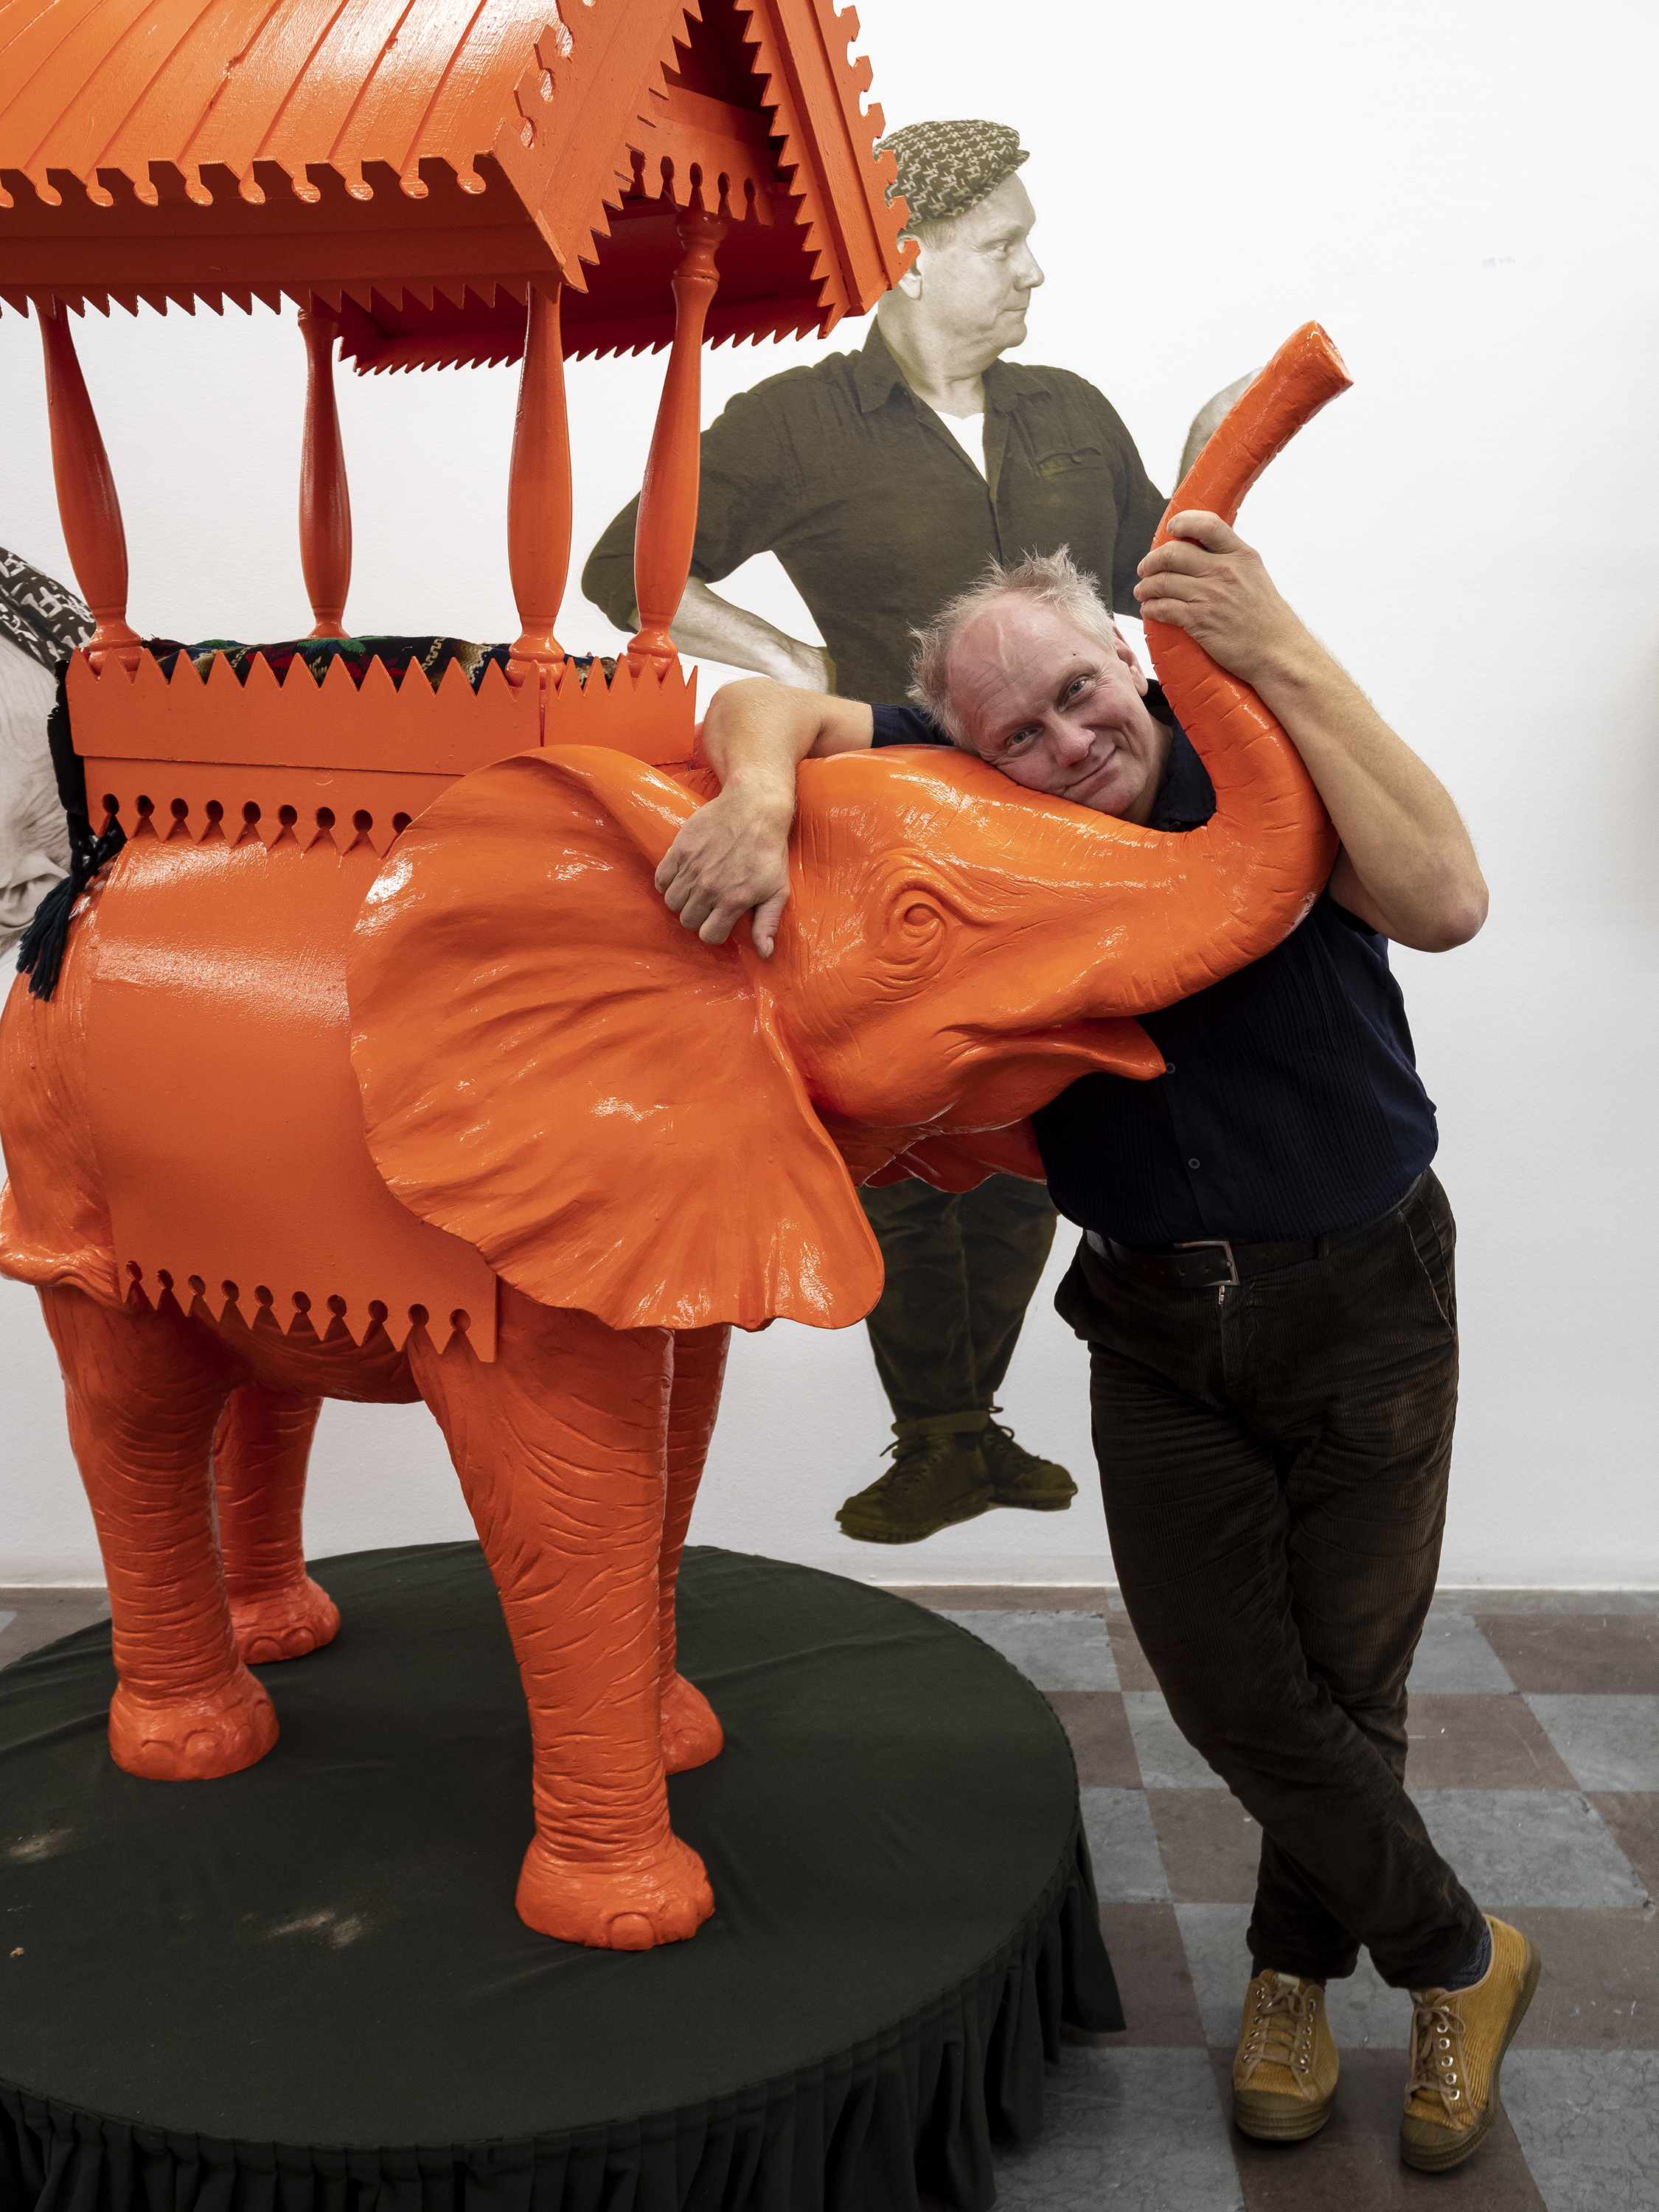 Konstnären Peter Johansson med Elefanten i rummet i samband med utställningen Souvenir på Wetterling Gallery i Stockholm.